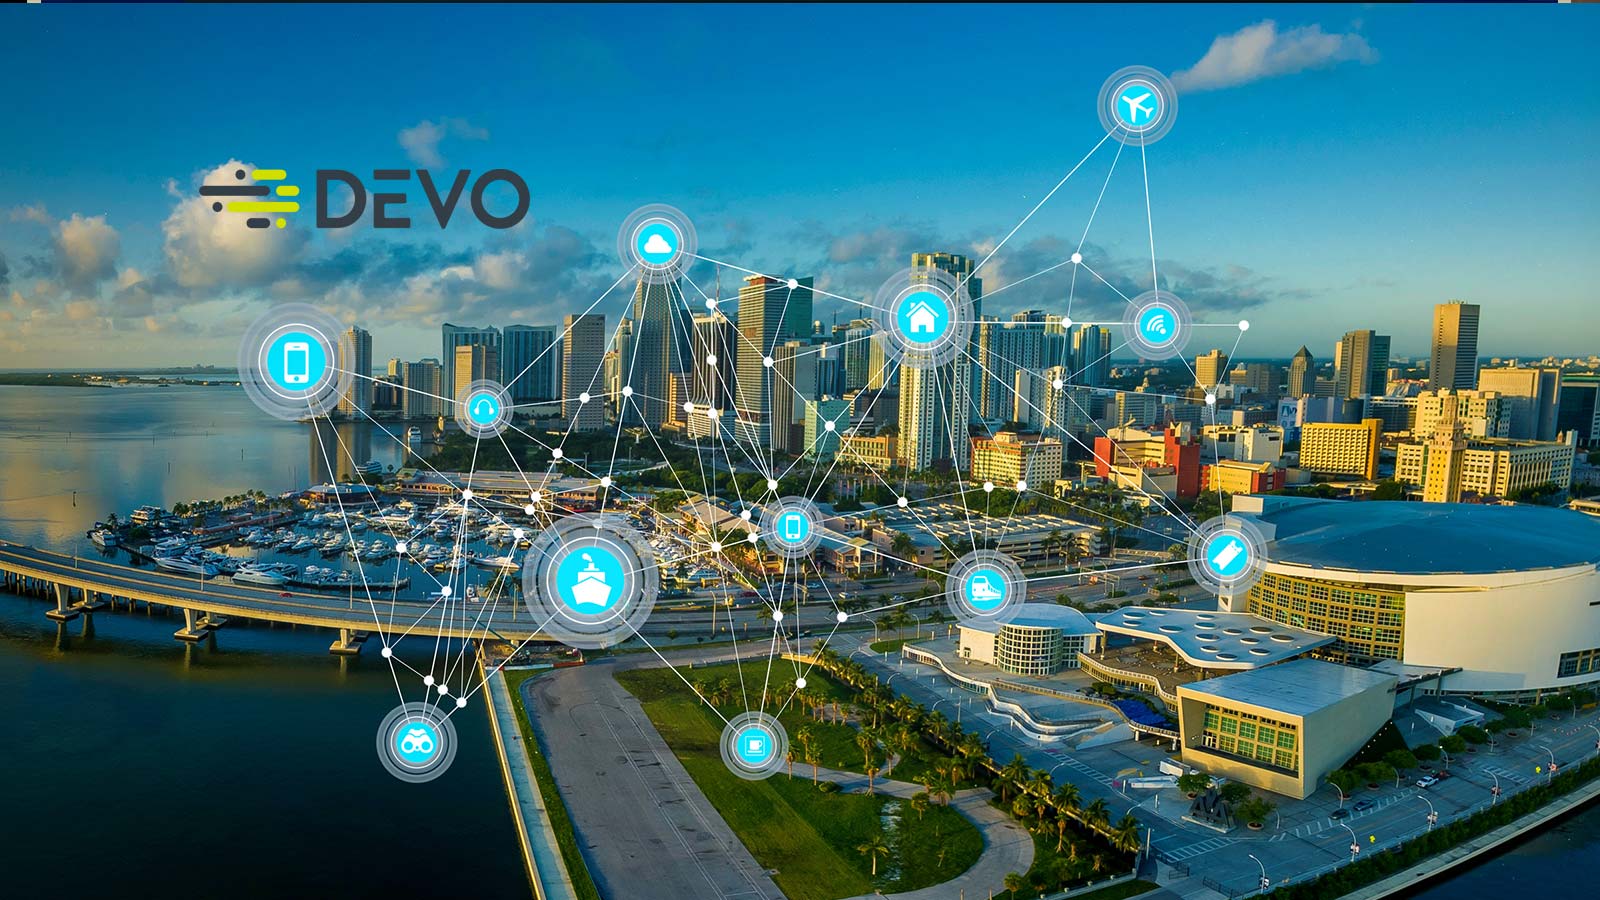 ViMoney-Devo Technology huy động thành công 250 triệu đô la Series E ở mức định giá 1,5 tỷ đô la